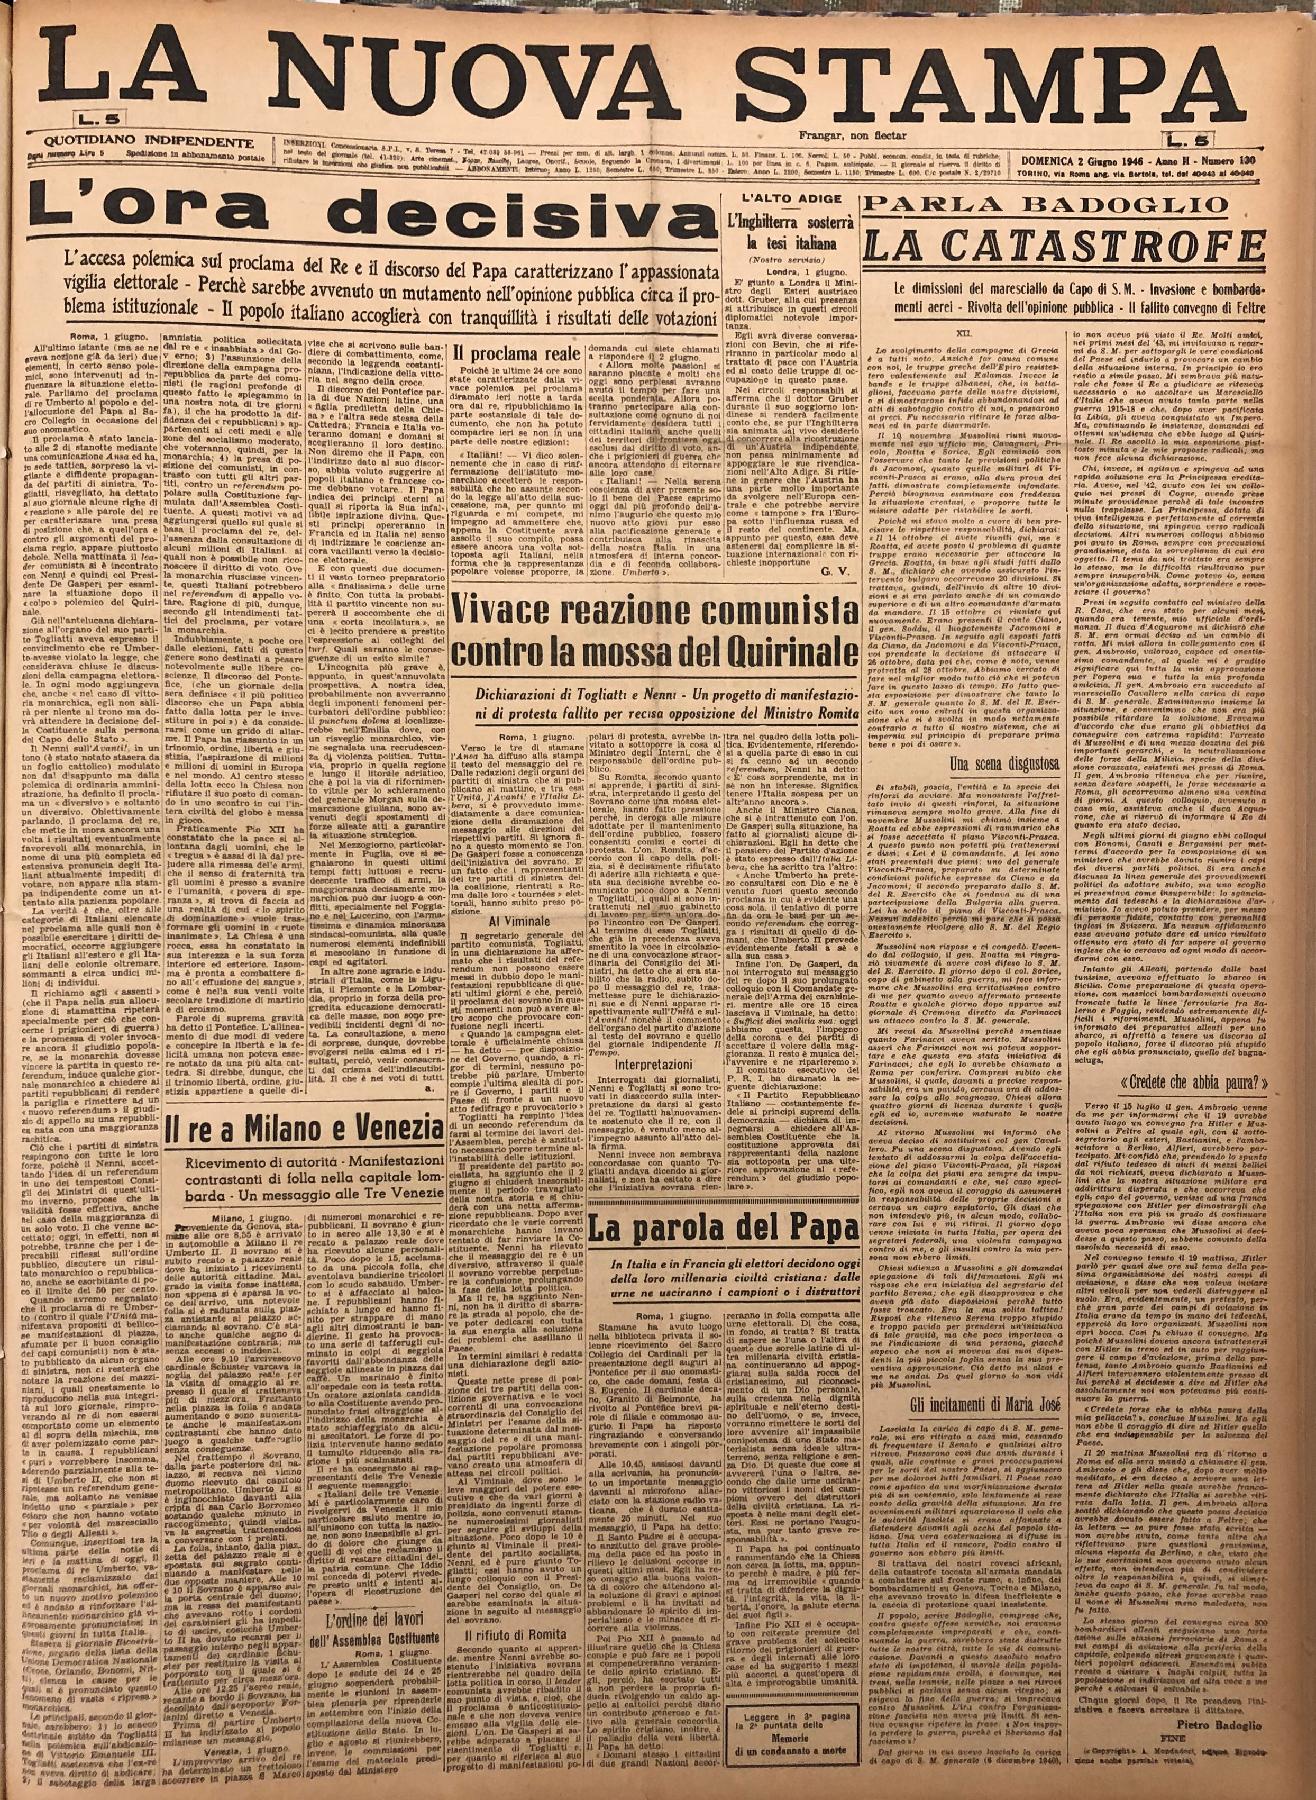 2 giugno 1946 - Prima pagina del quotidiano "La Nuova Stampa".